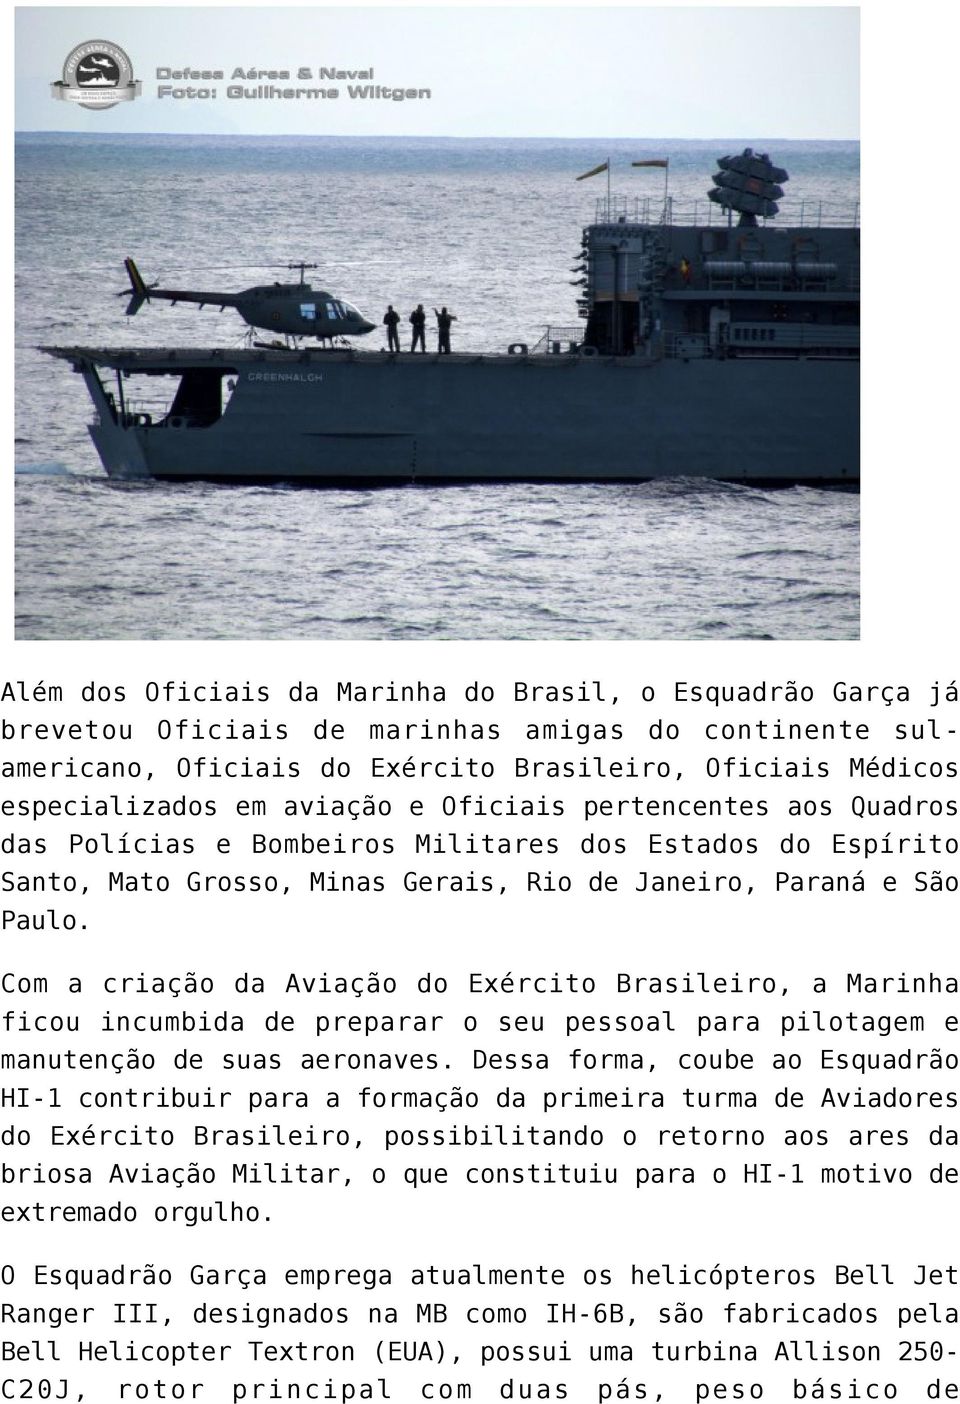 Com a criação da Aviação do Exército Brasileiro, a Marinha ficou incumbida de preparar o seu pessoal para pilotagem e manutenção de suas aeronaves.